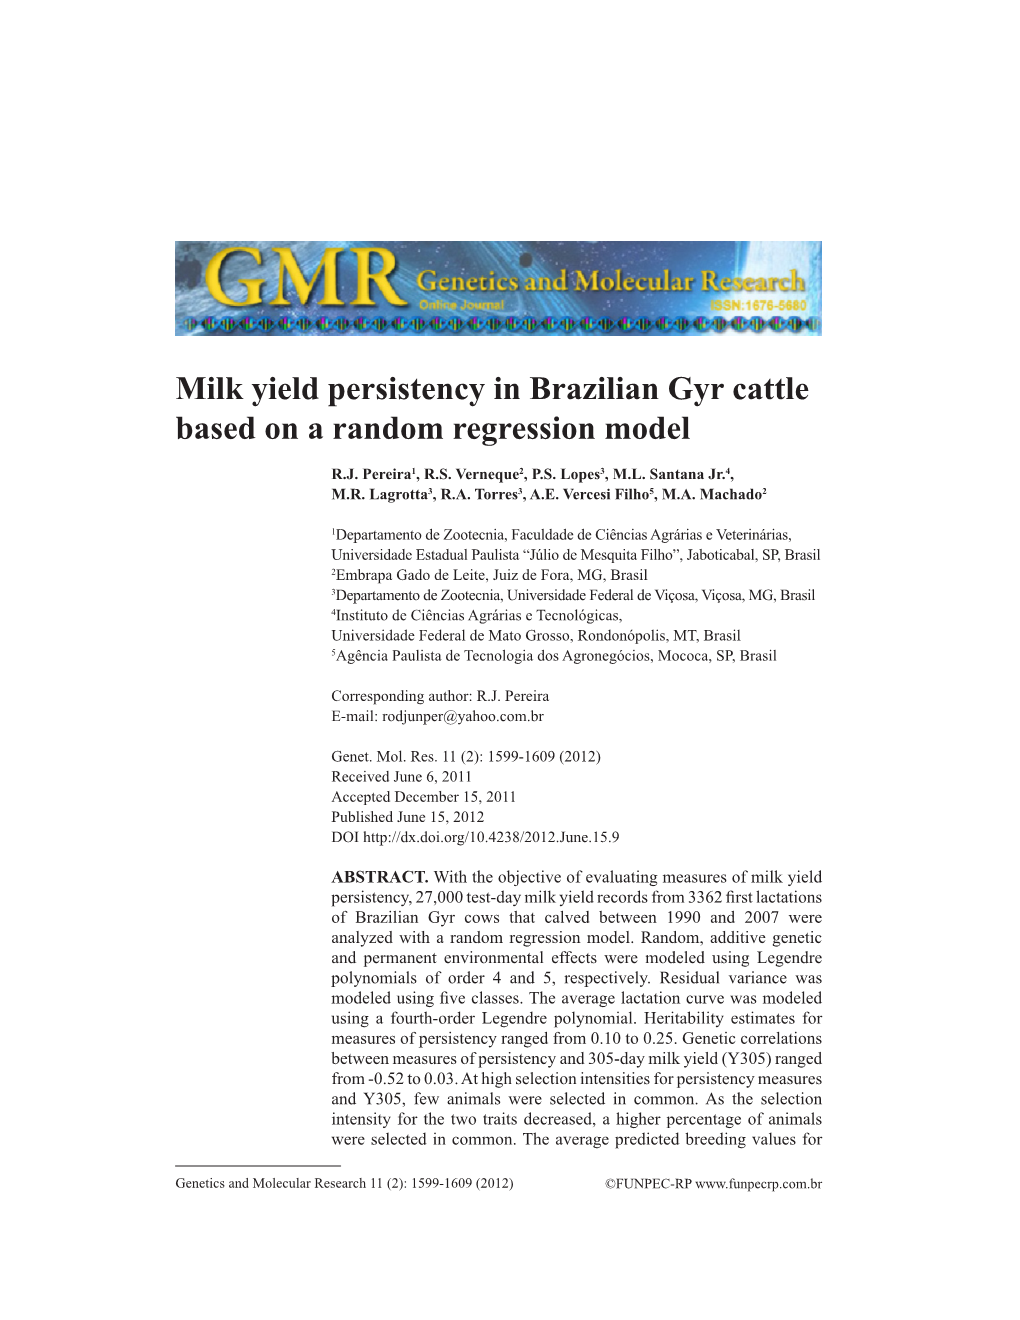 Milk Yield Persistency in Brazilian Gyr Cattle Based on a Random Regression Model